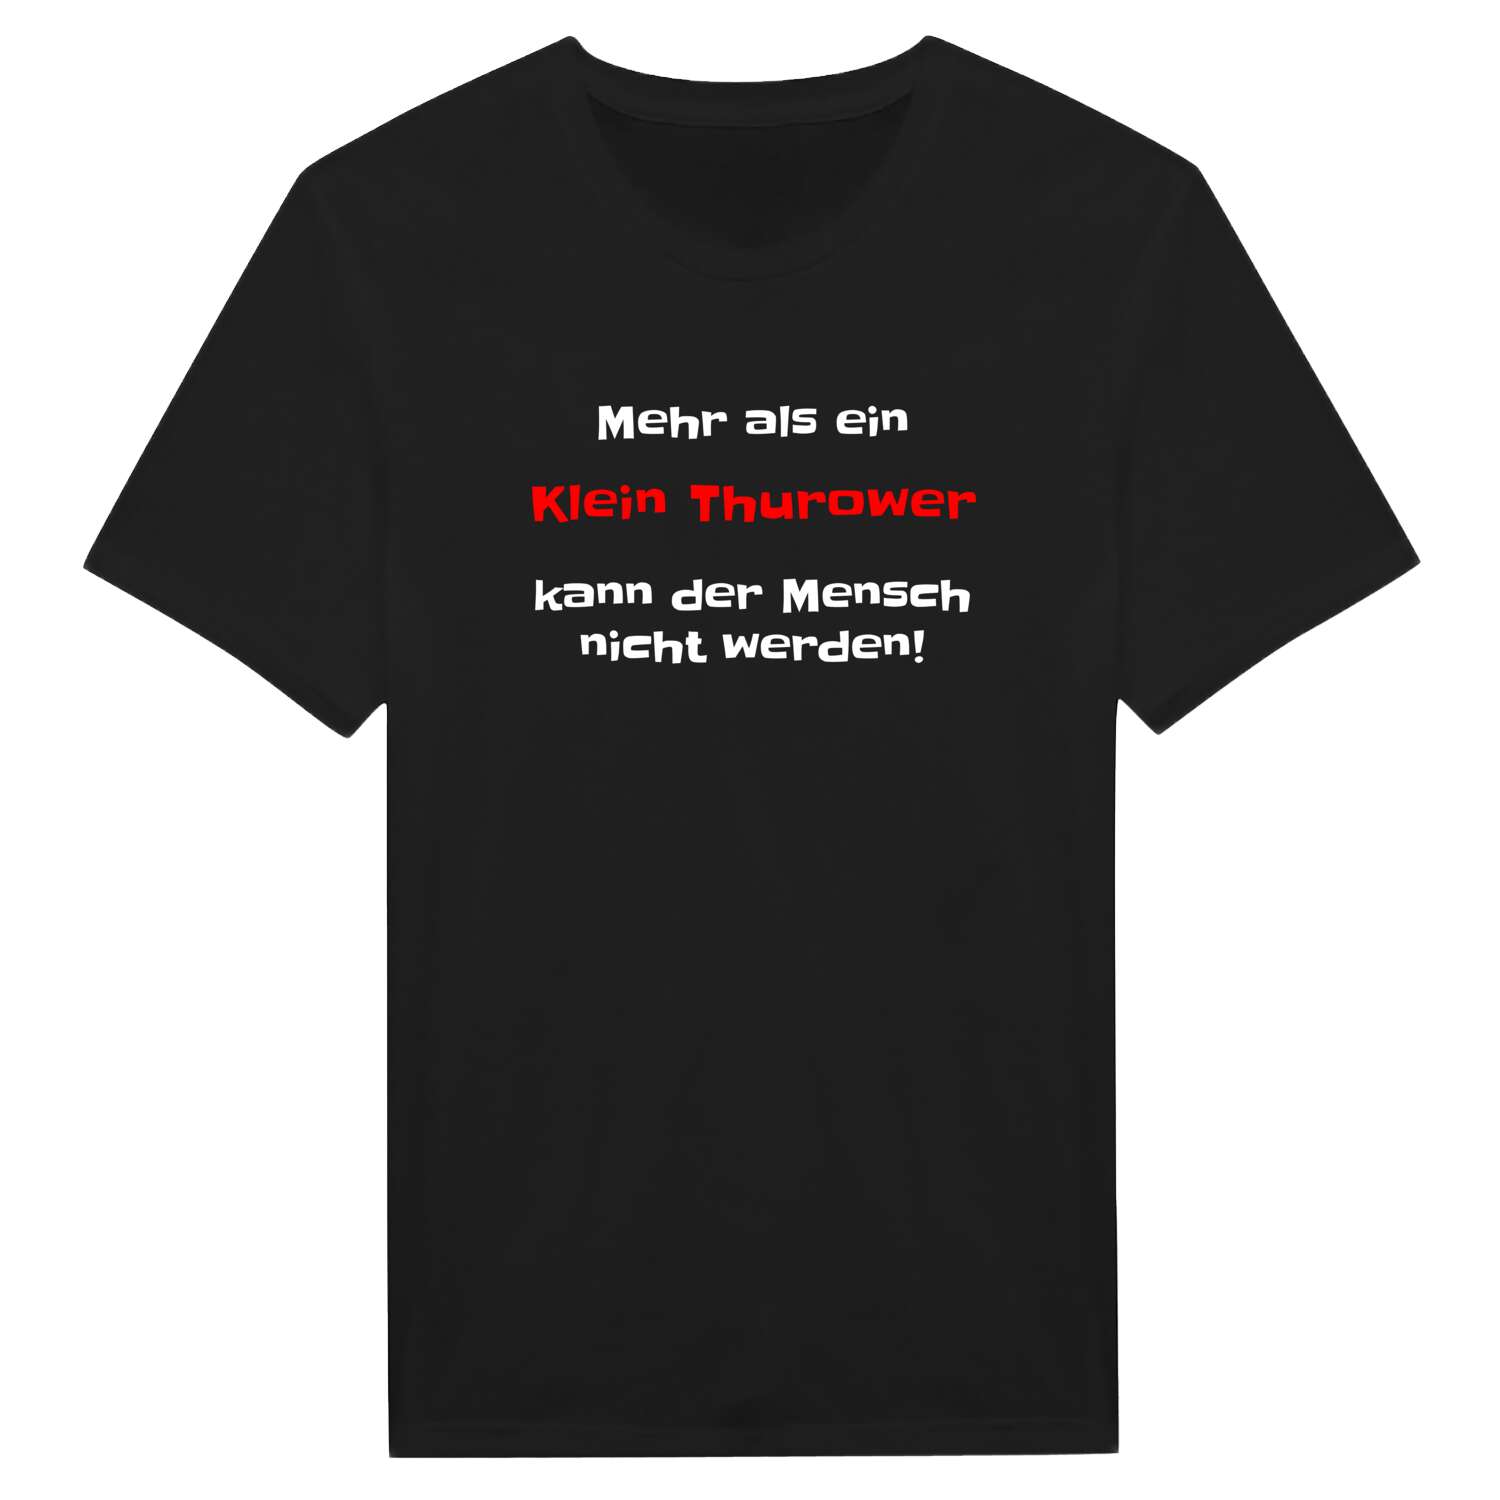 Klein Thurow T-Shirt »Mehr als ein«